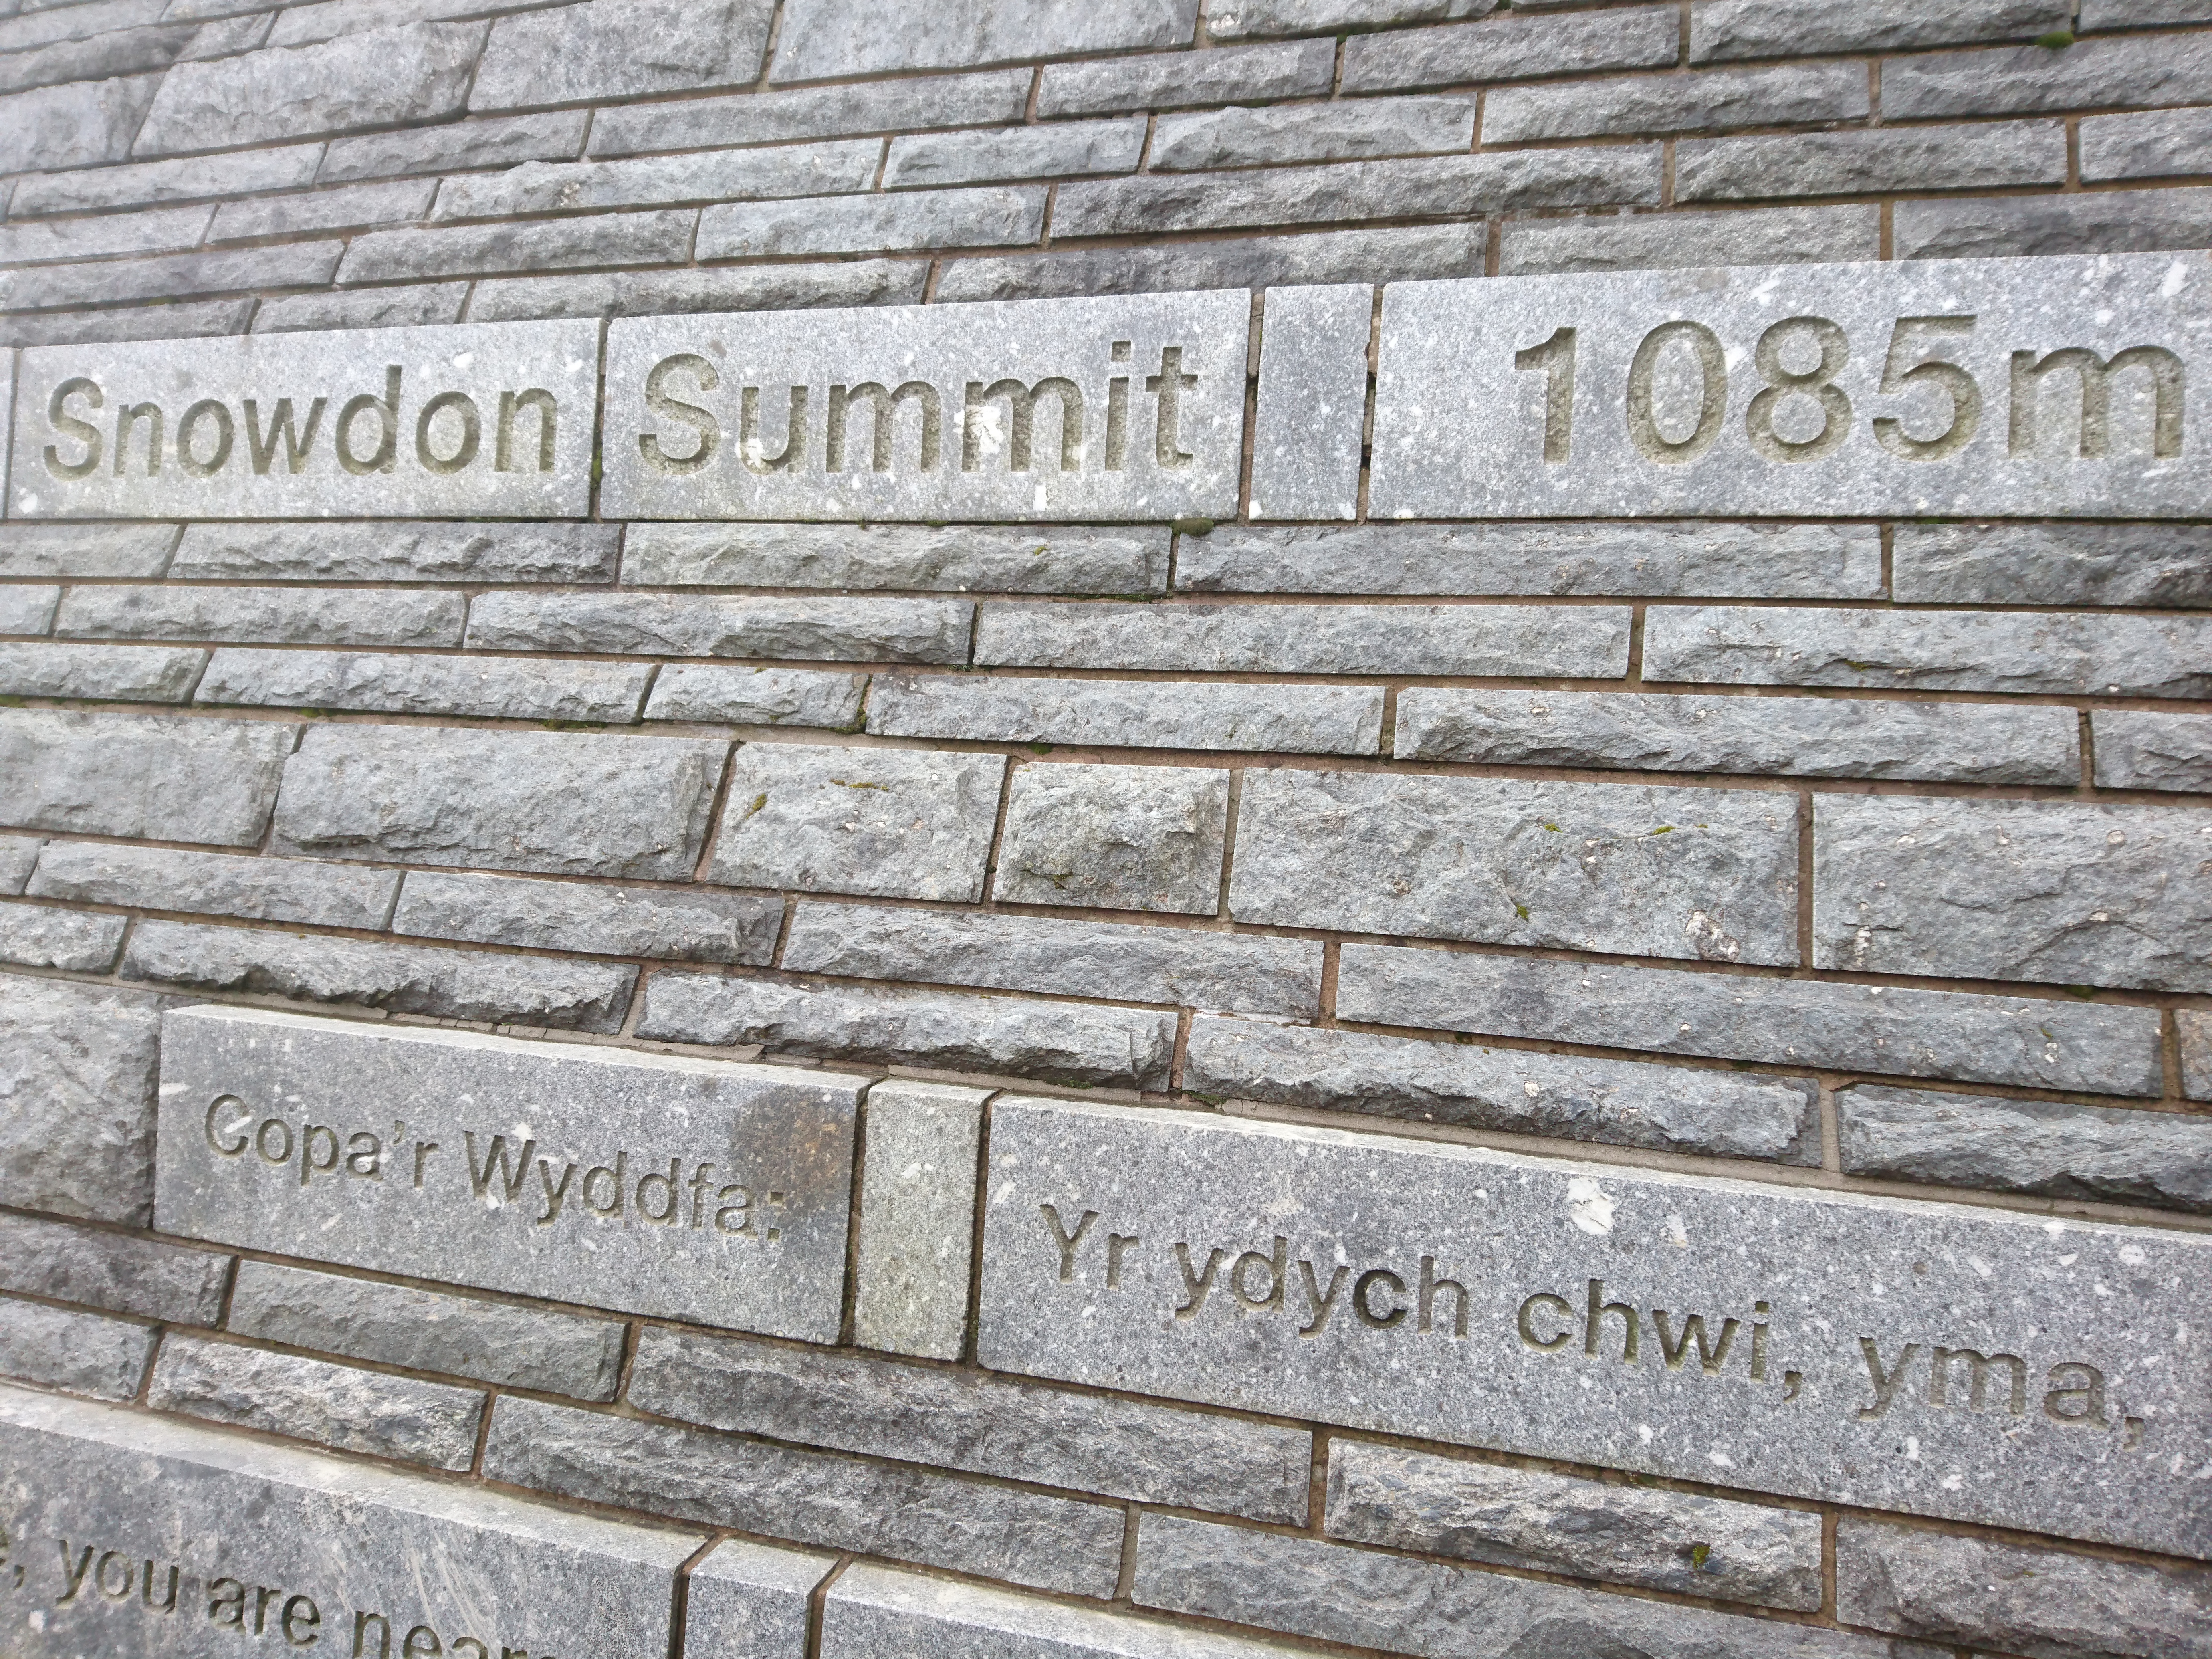 Snowdon Summit